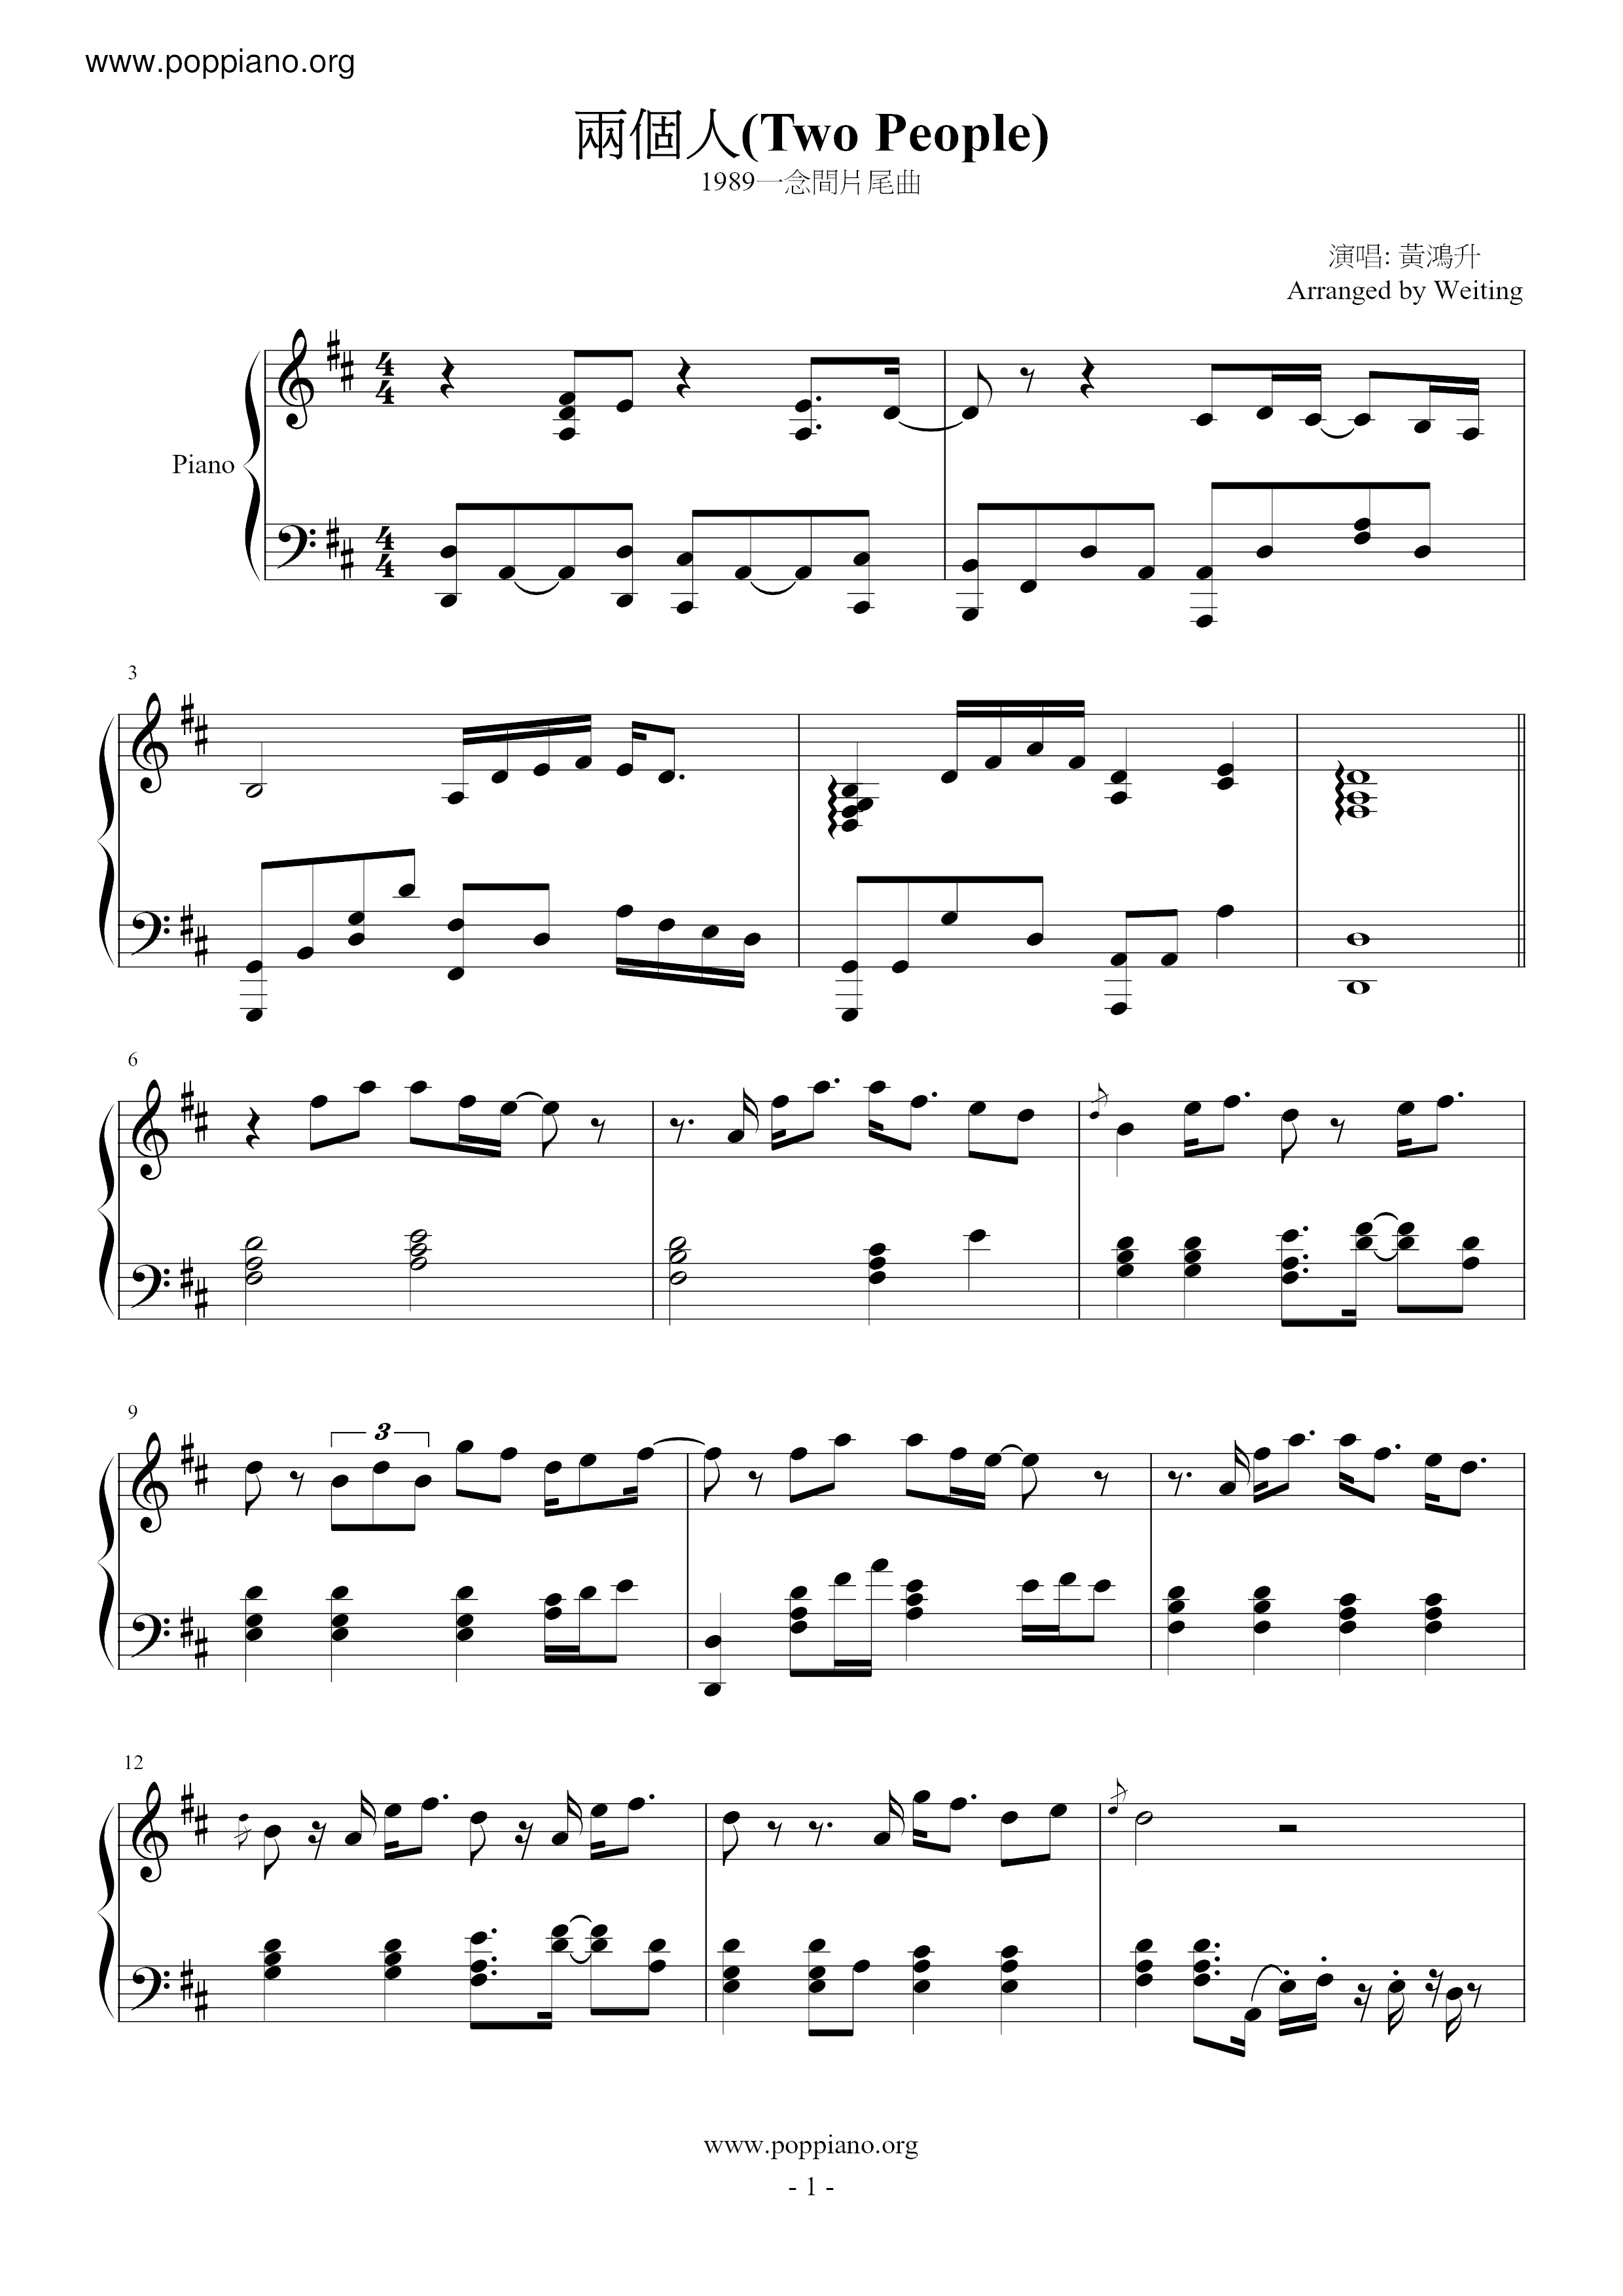 Two People (1989 Yinianjianqu) Score